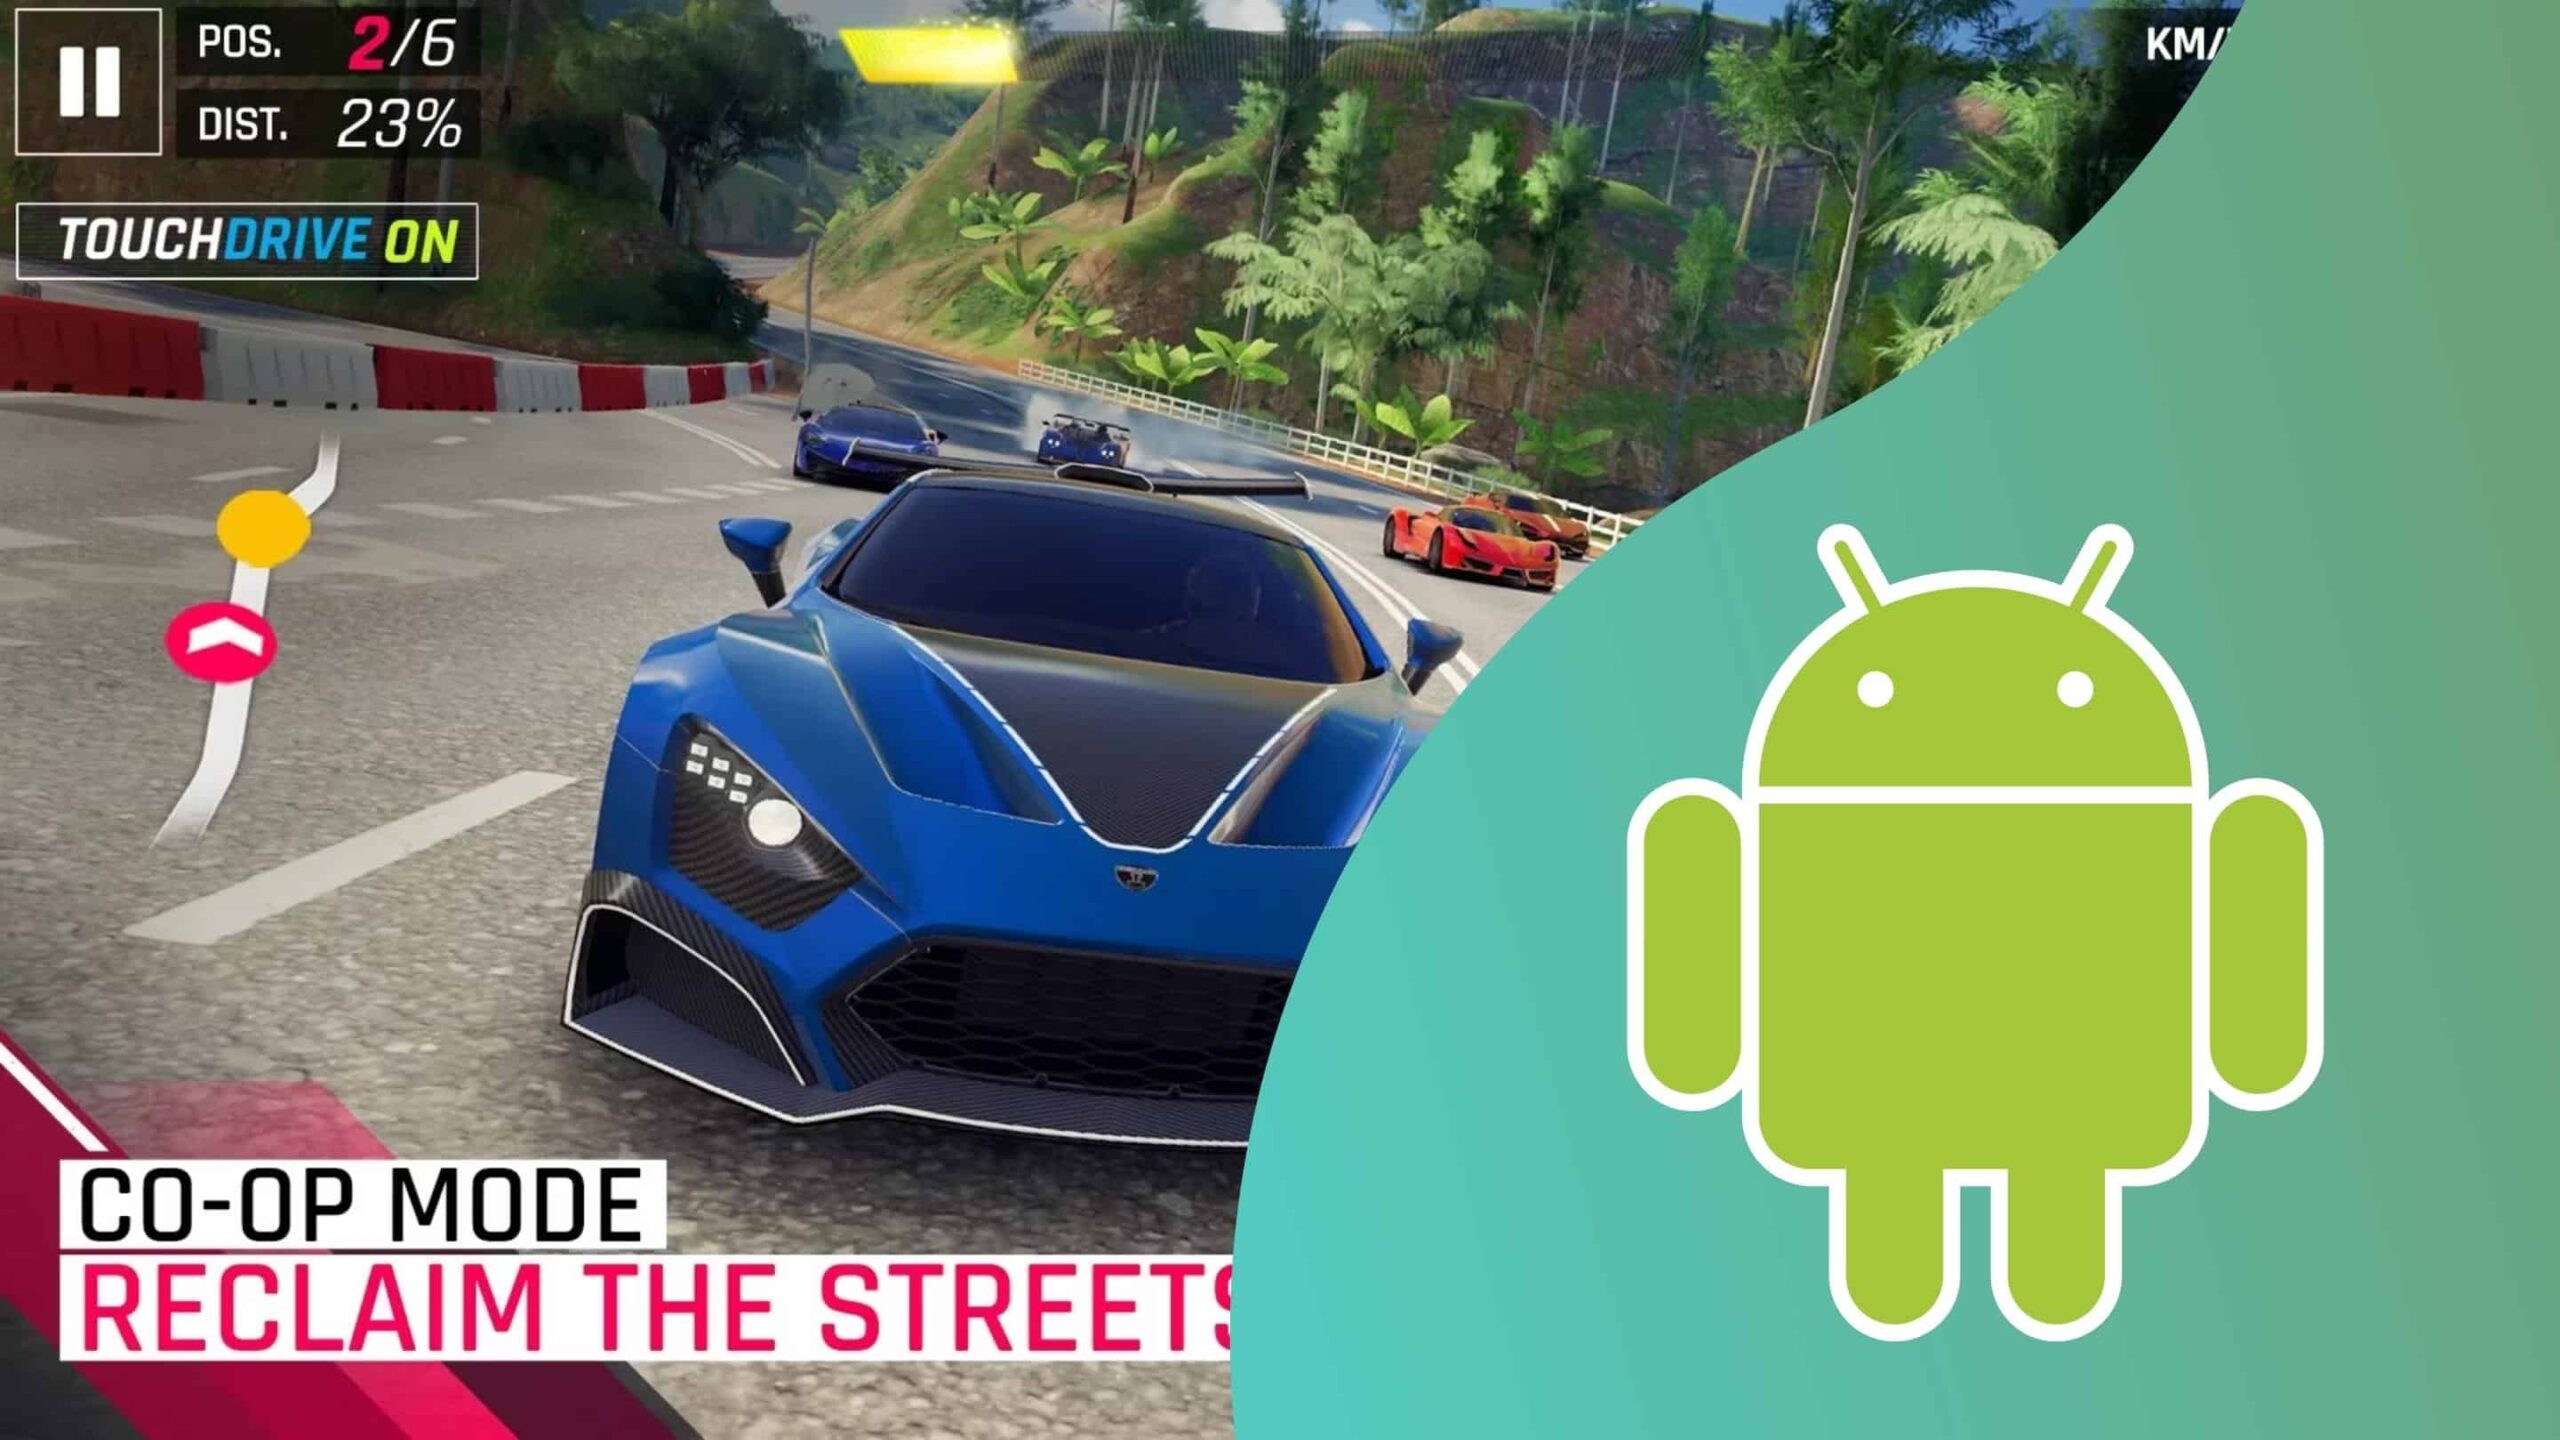 Conheça os 7 melhores jogos de corrida para Android